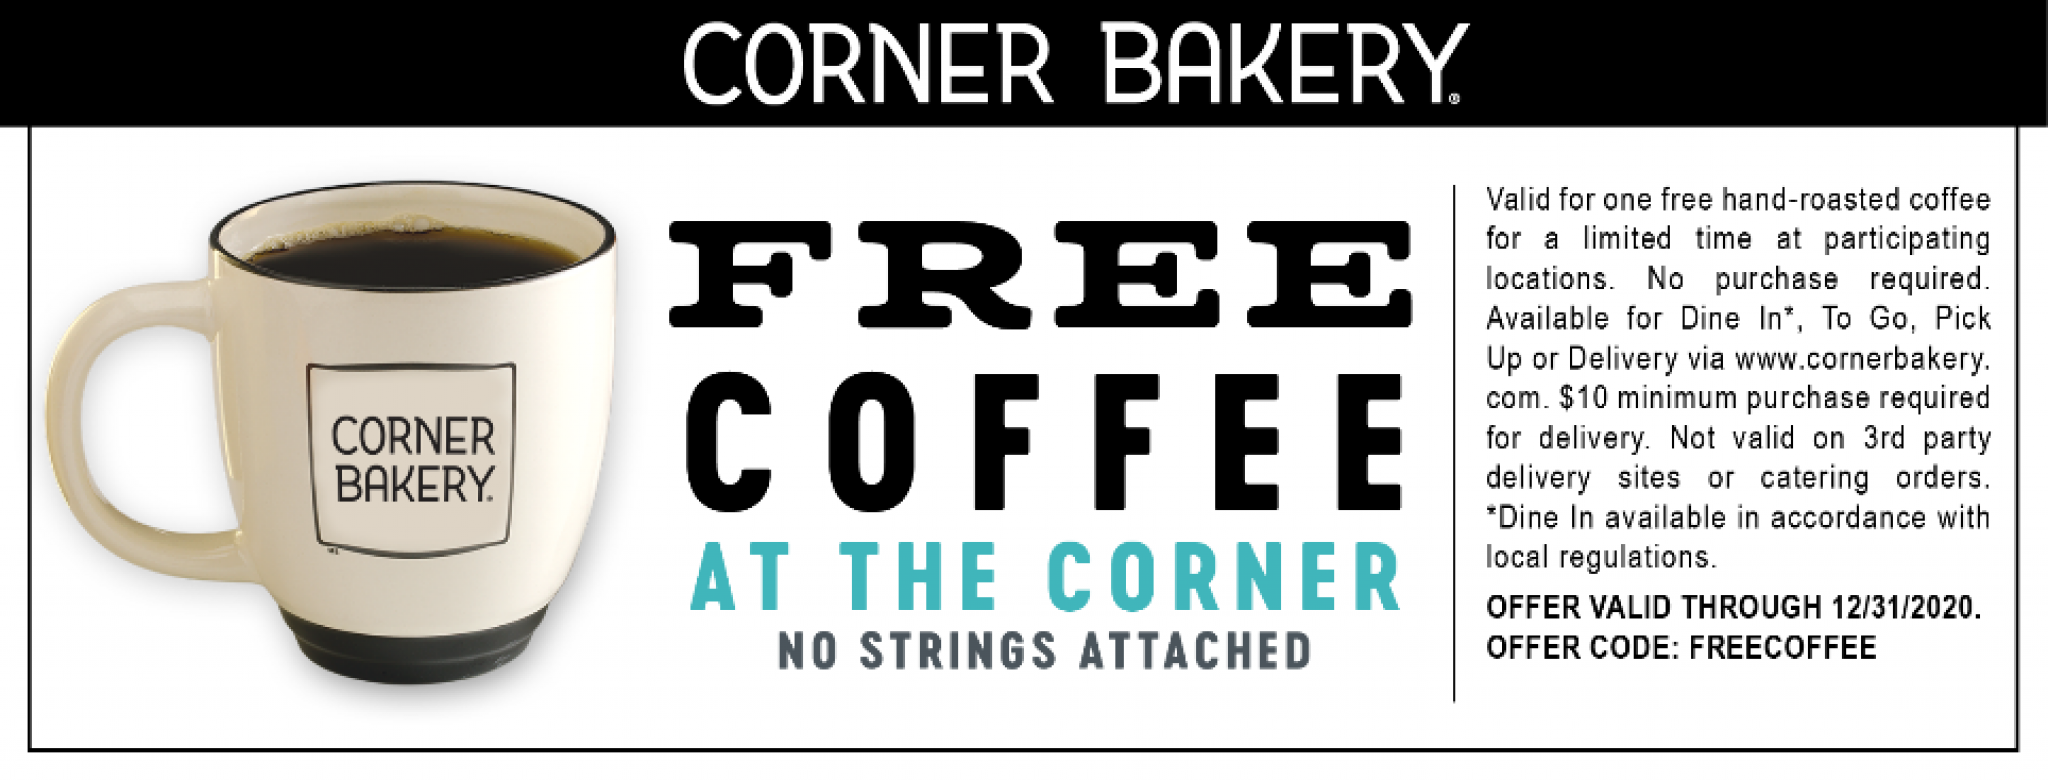 Free Corner Bakery Coffee - Get me FREE Samples